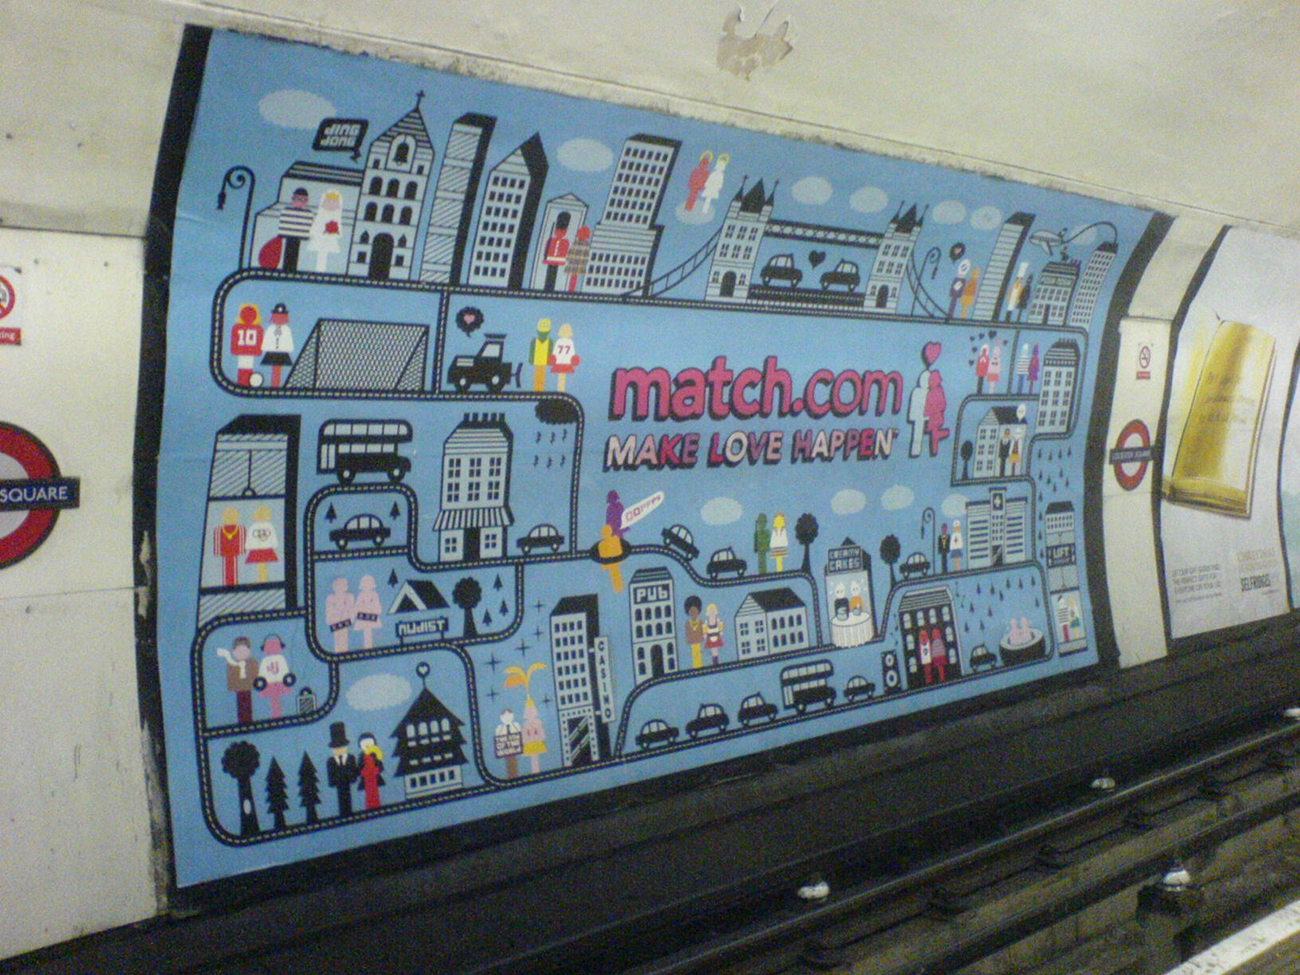 هناك إعلان ماتش دوت كوم كبير مرسوم على جدار مترو الأنفاق. تُظهر المدينة الكرتونية المليئة بالأزواج. تقول التسمية التوضيحية: اجعل الحب يحدث.